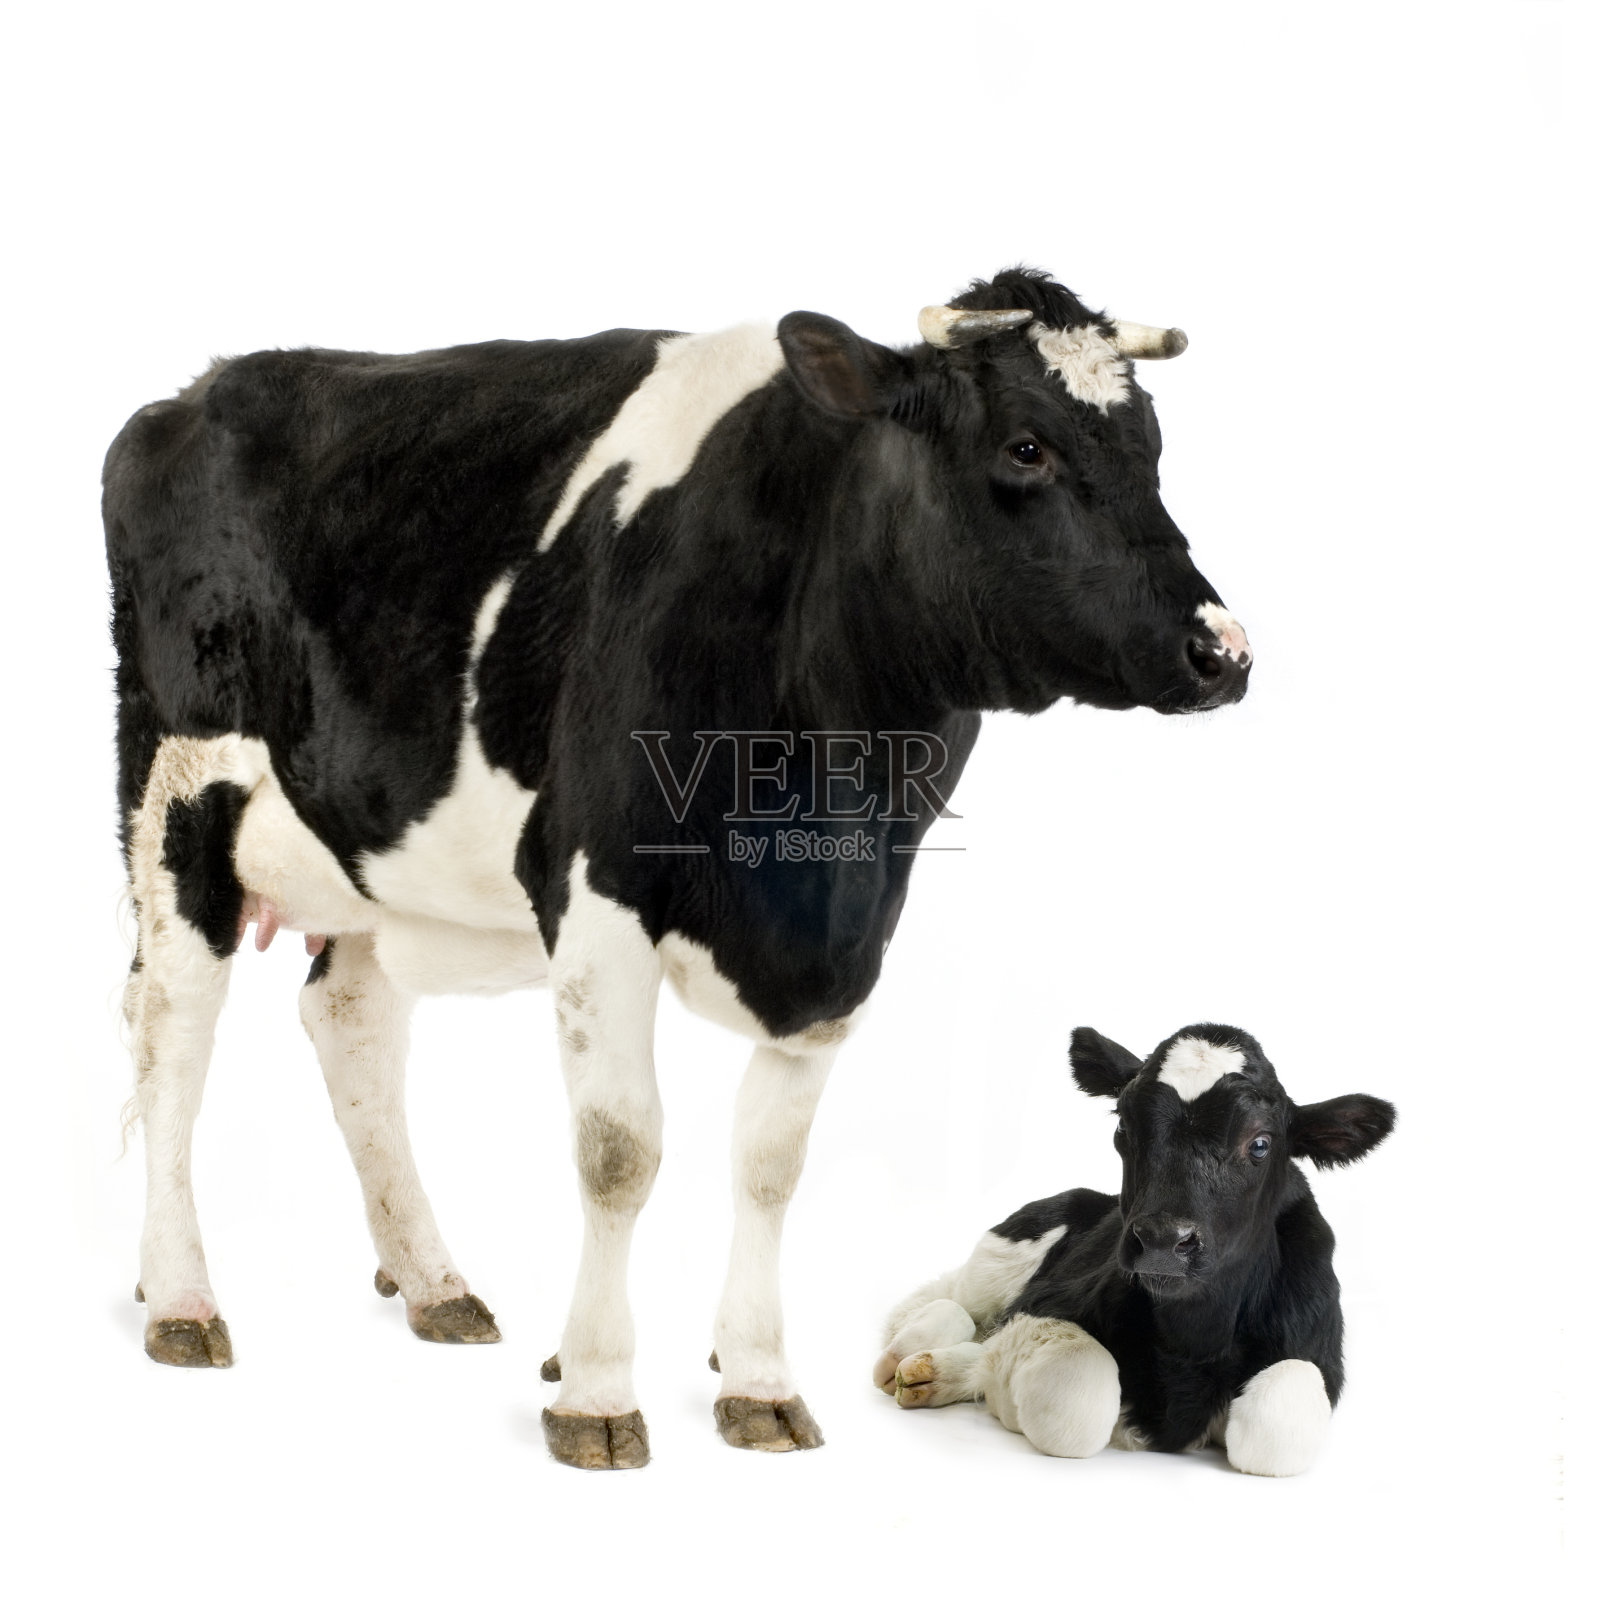 荷斯坦母牛和她的小牛照片摄影图片